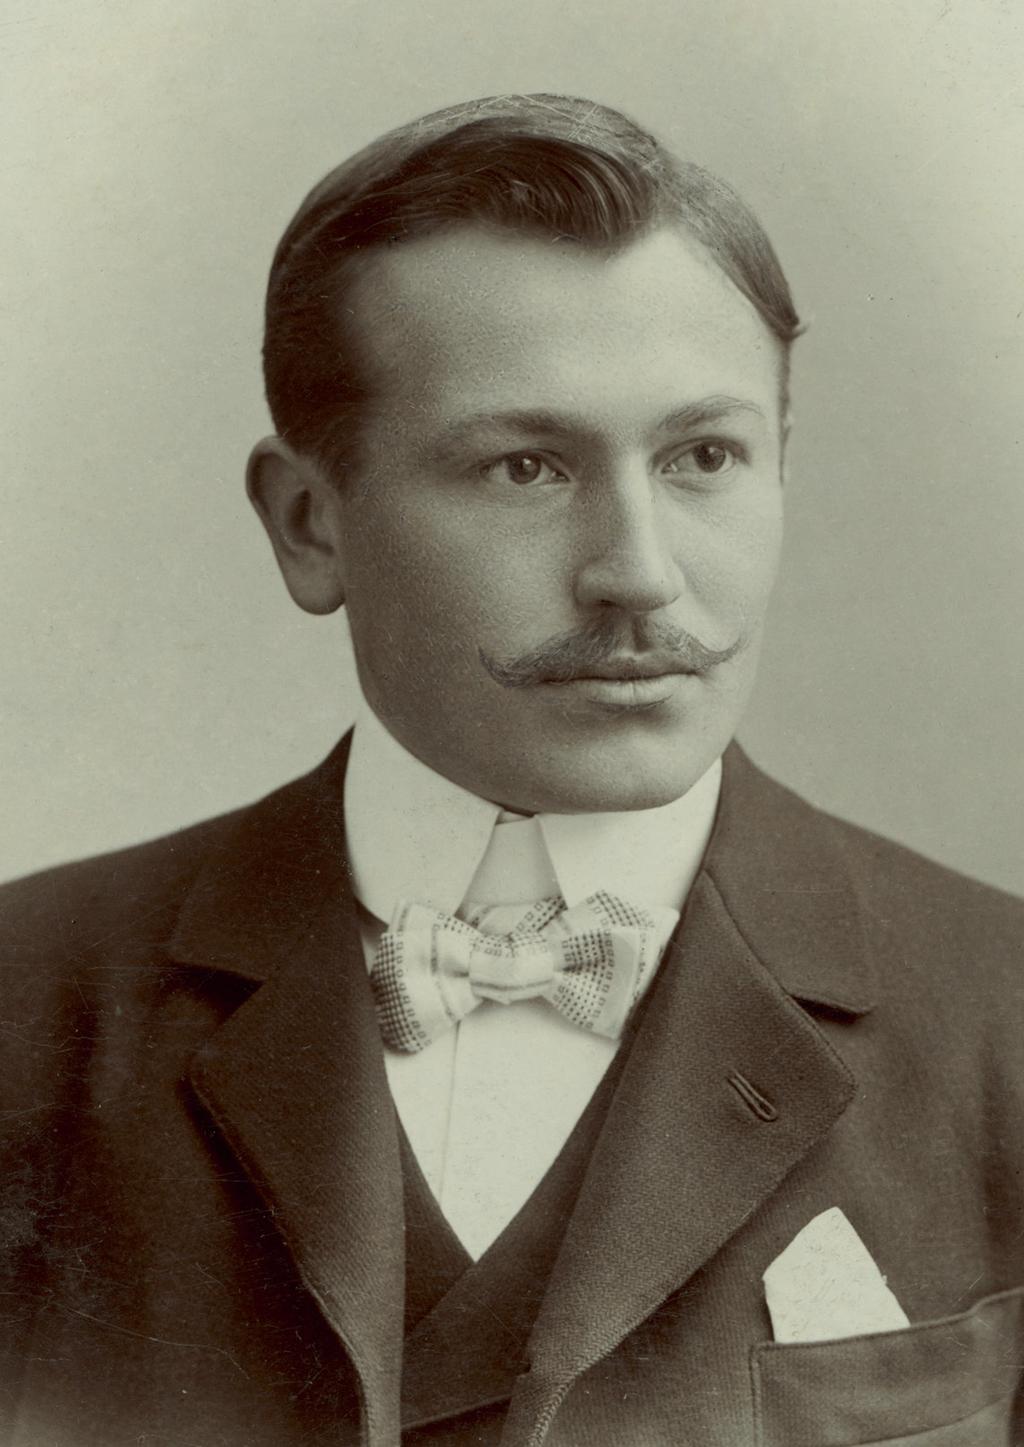 El espíritu del Oyster Perpetual hans wilsdorf La historia de Rolex está intrínsecamente vinculada al espíritu pionero y visionario del joven Hans Wilsdorf, su fundador, quien incursionó en el mundo